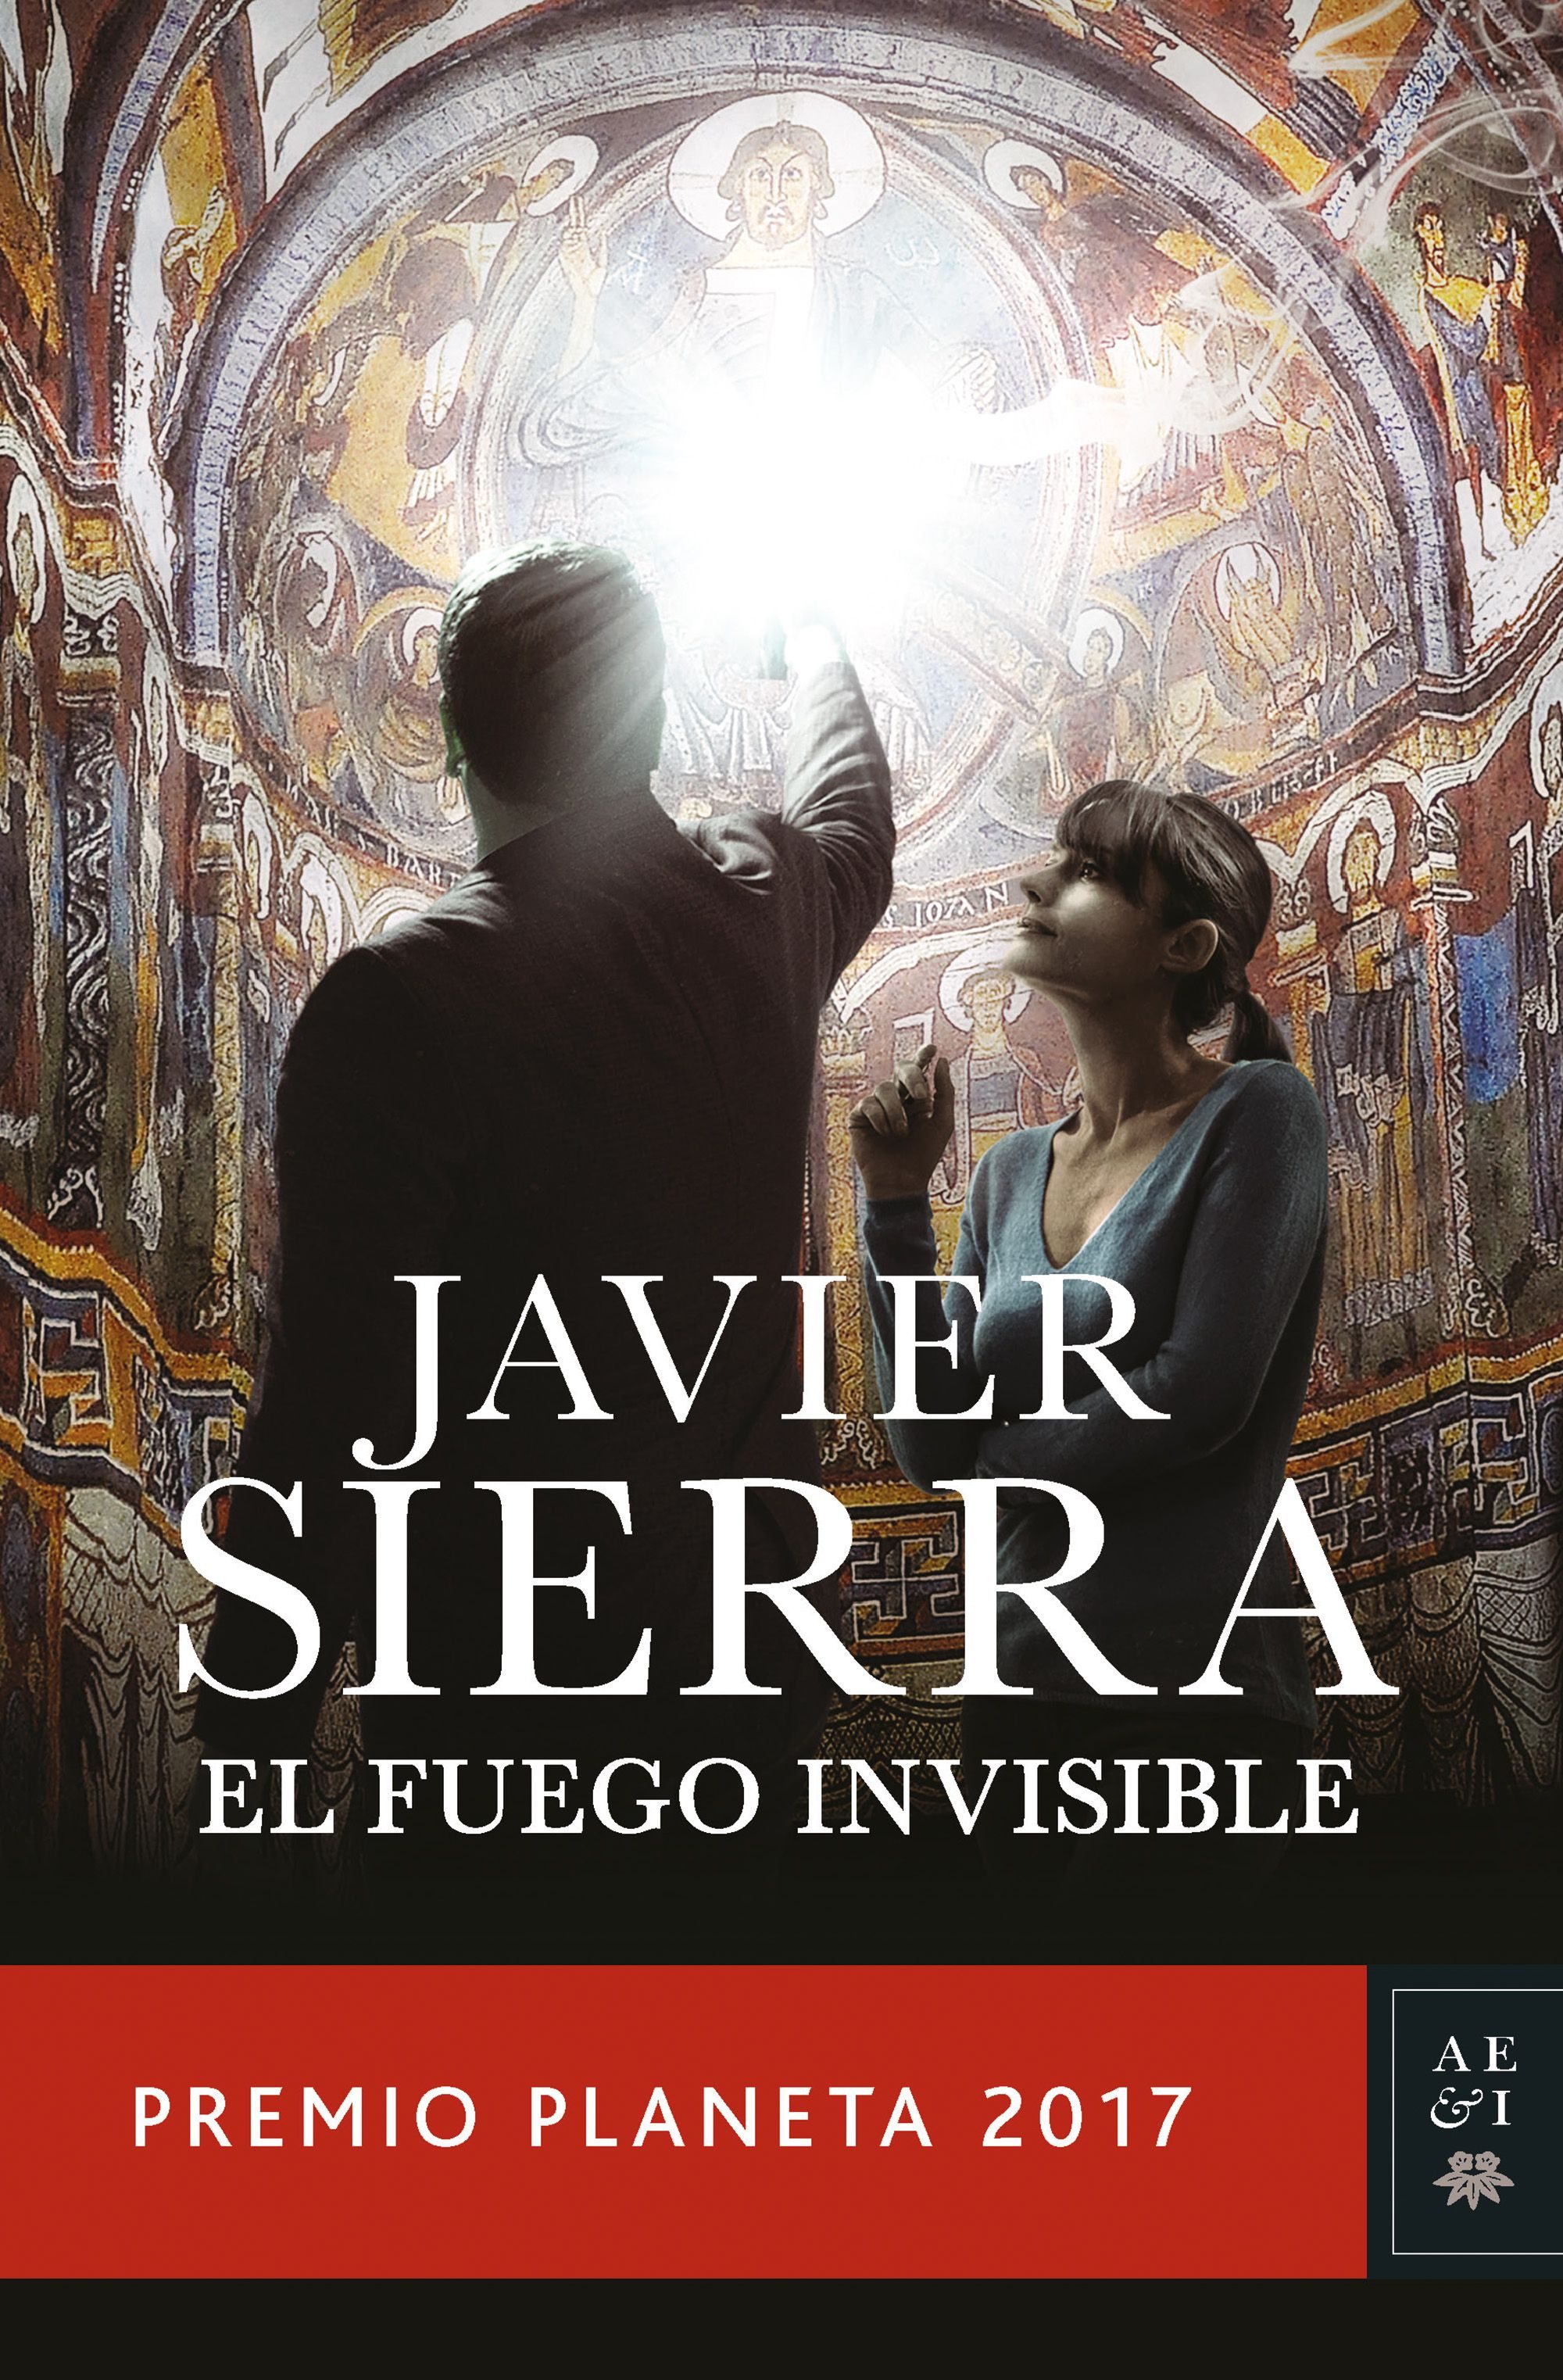 El fuego invisible (Javier Sierra, 2017)